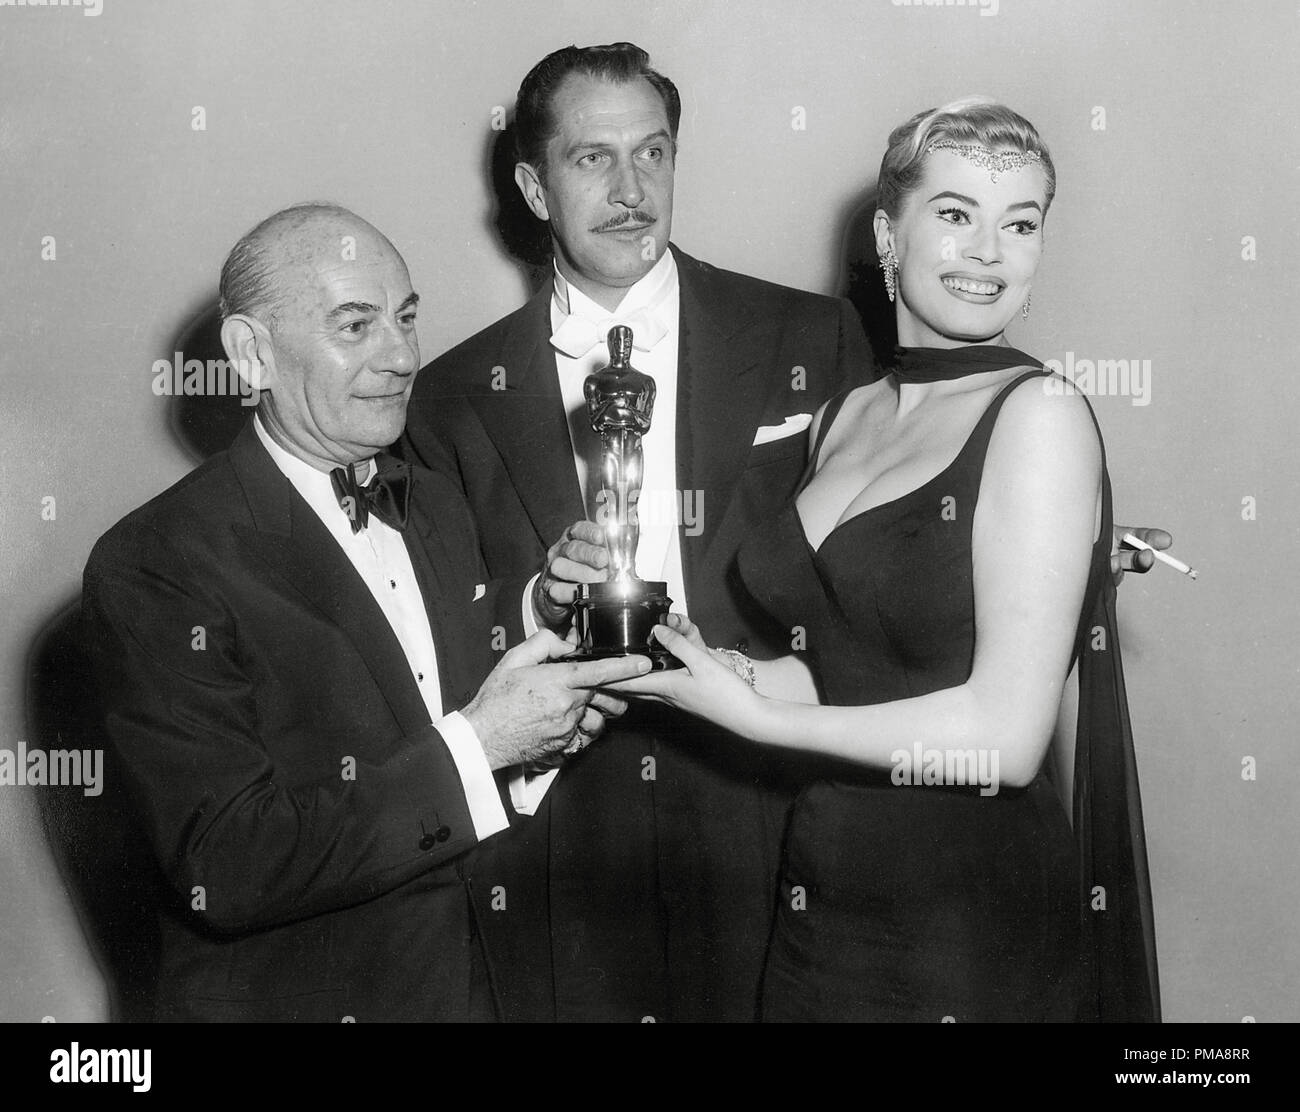 Vincent Price, Anita Ekberg und Morris Stoloff (musikalische Kerbe) auf der 30. jährlichen Academy Awards, 1958 Datei Referenz # 31955 653 THA Stockfoto